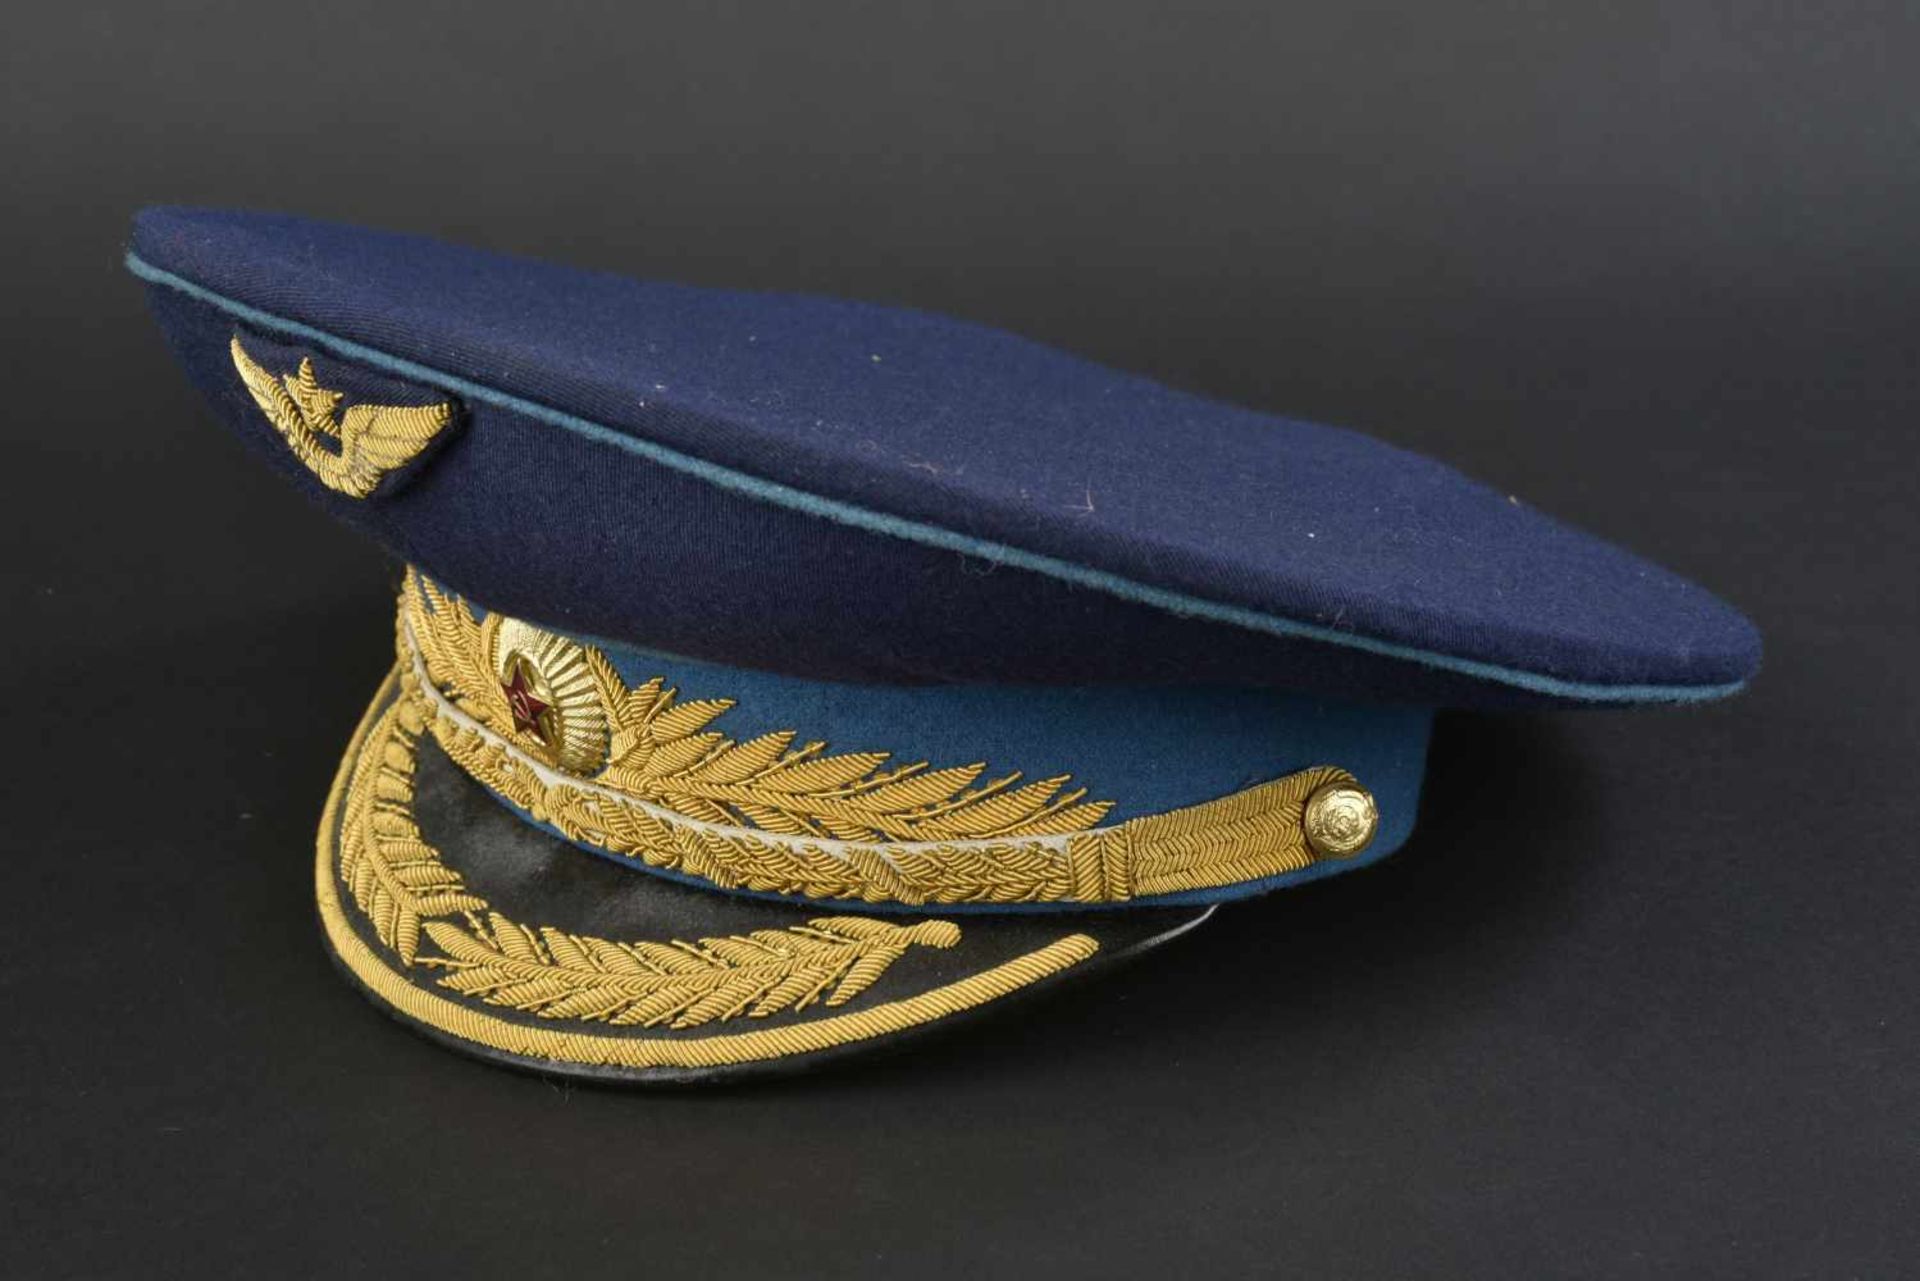 Casquette de général d'aviation soviétique En tissu bleu foncé, bandeau bleu ciel, insigne - Image 2 of 4